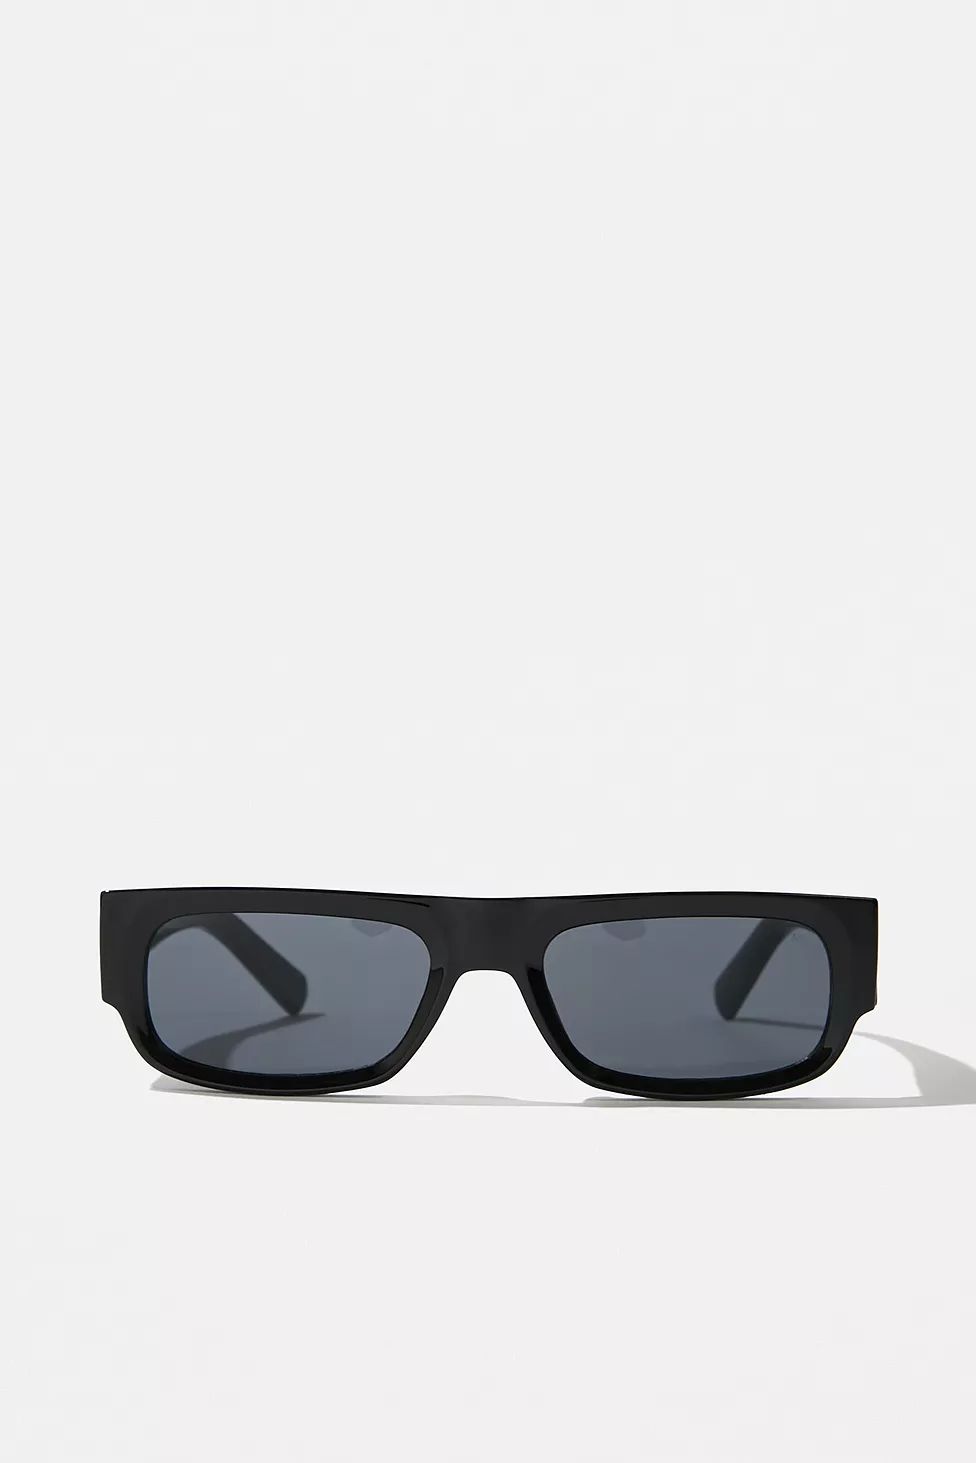 A.Kjaerbede Black Jean Sunglasses | Urban Outfitters (EU)